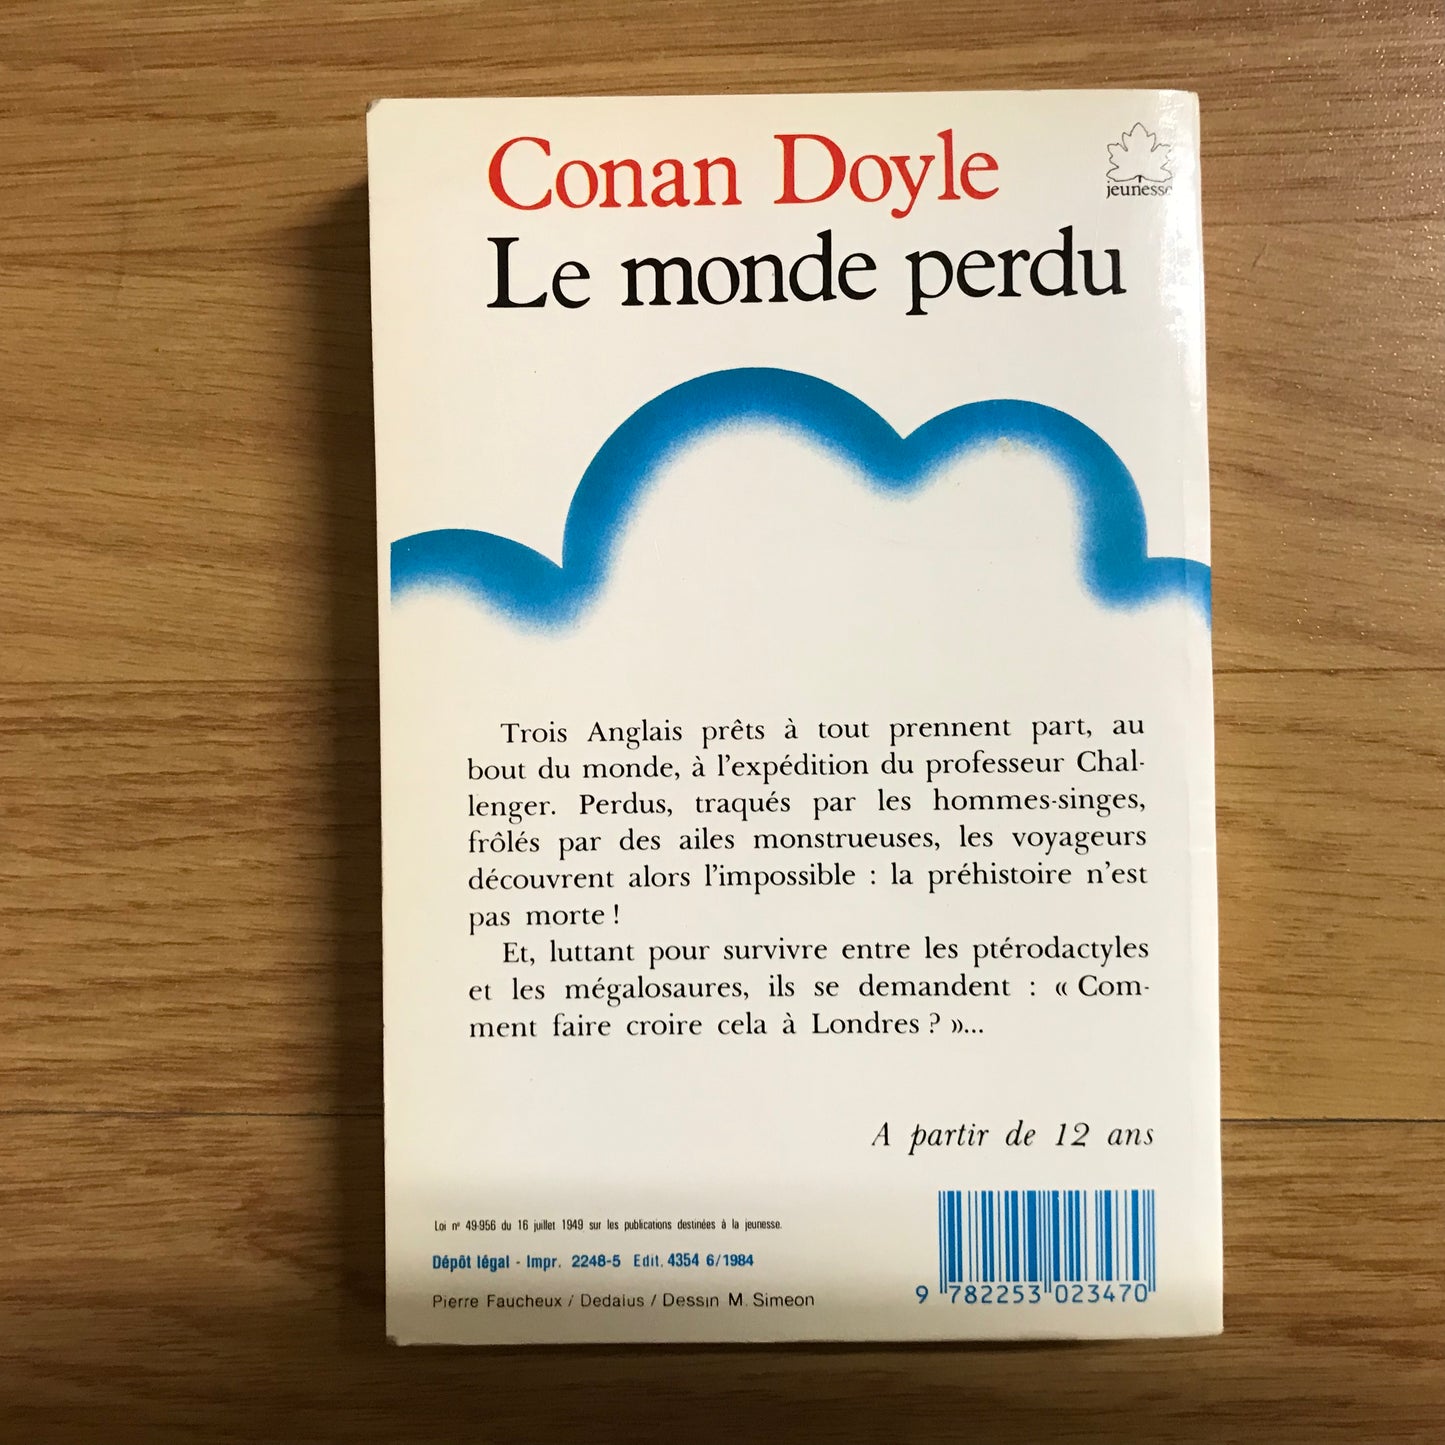 Conan Doyle - Le monde perdu